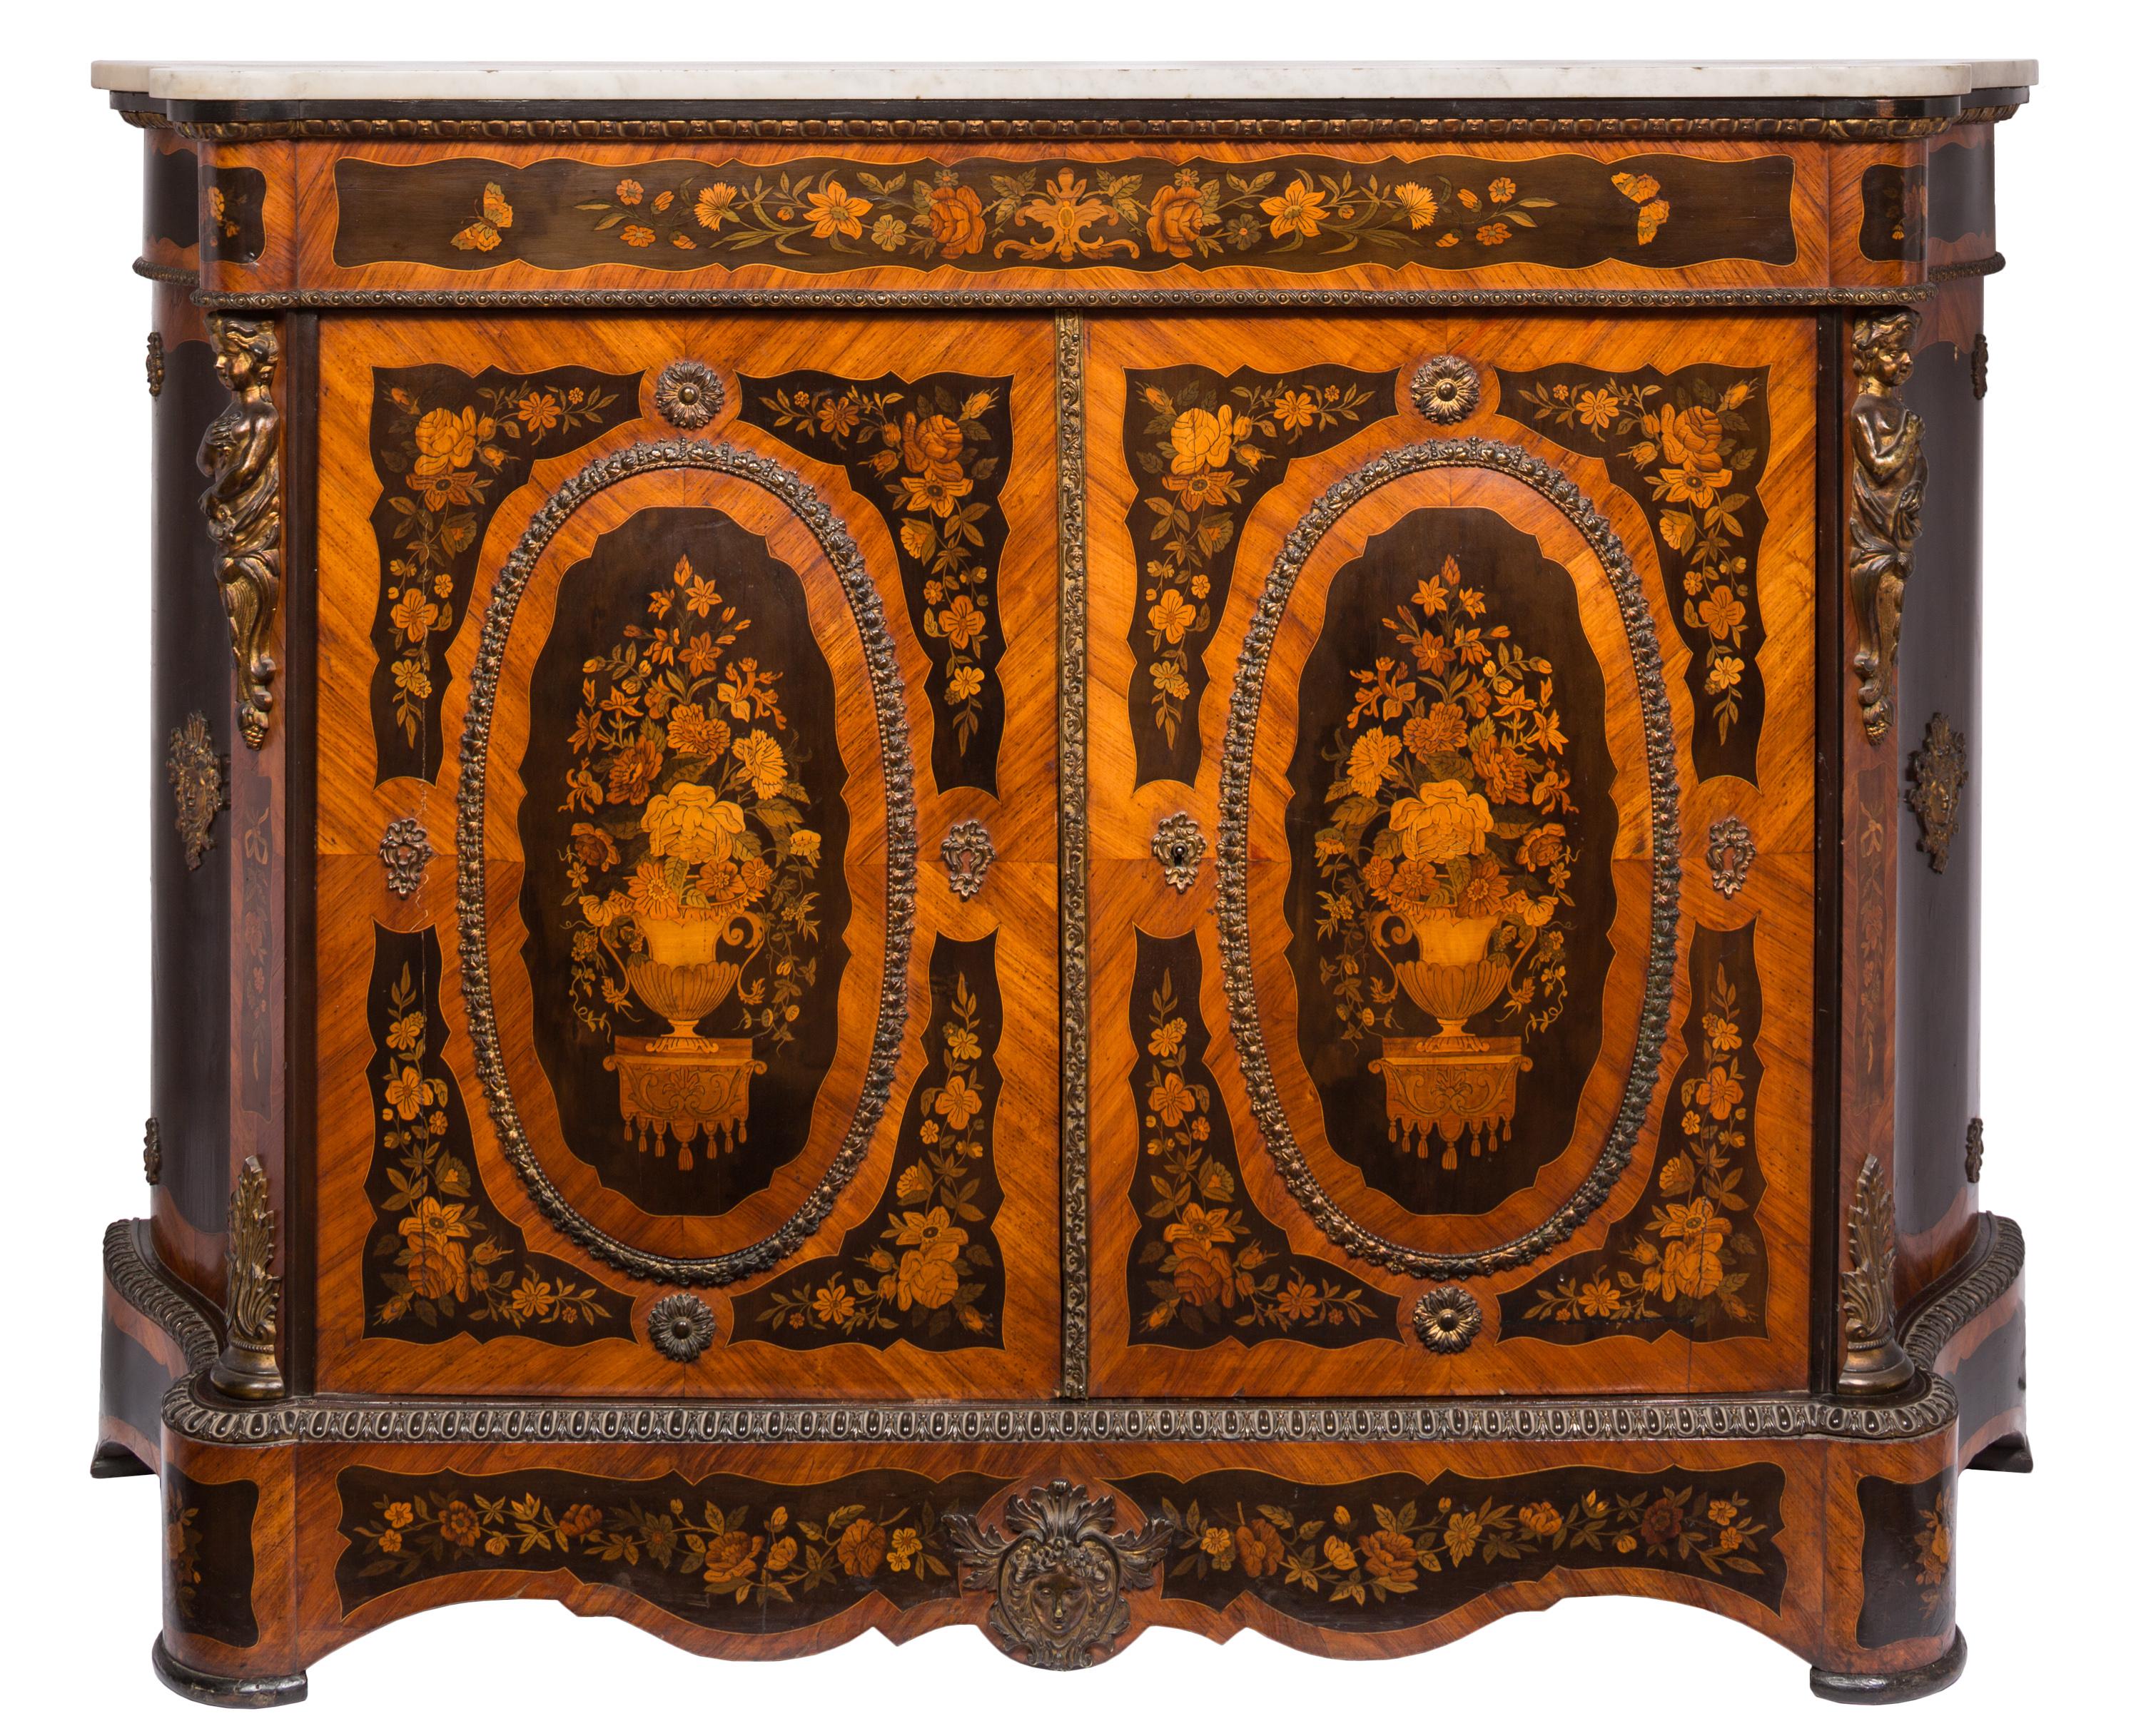 Ein zusammengehöriges Paar französischer zweitüriger Beistellschränke im Louis-XVI-Stil des 19. Jahrhunderts mit komplizierten Intarsien aus mehreren Hölzern mit Blumenmotiven und vergoldeten Bronzedetails. Der zentrale ovale Bildbereich jeder Tür